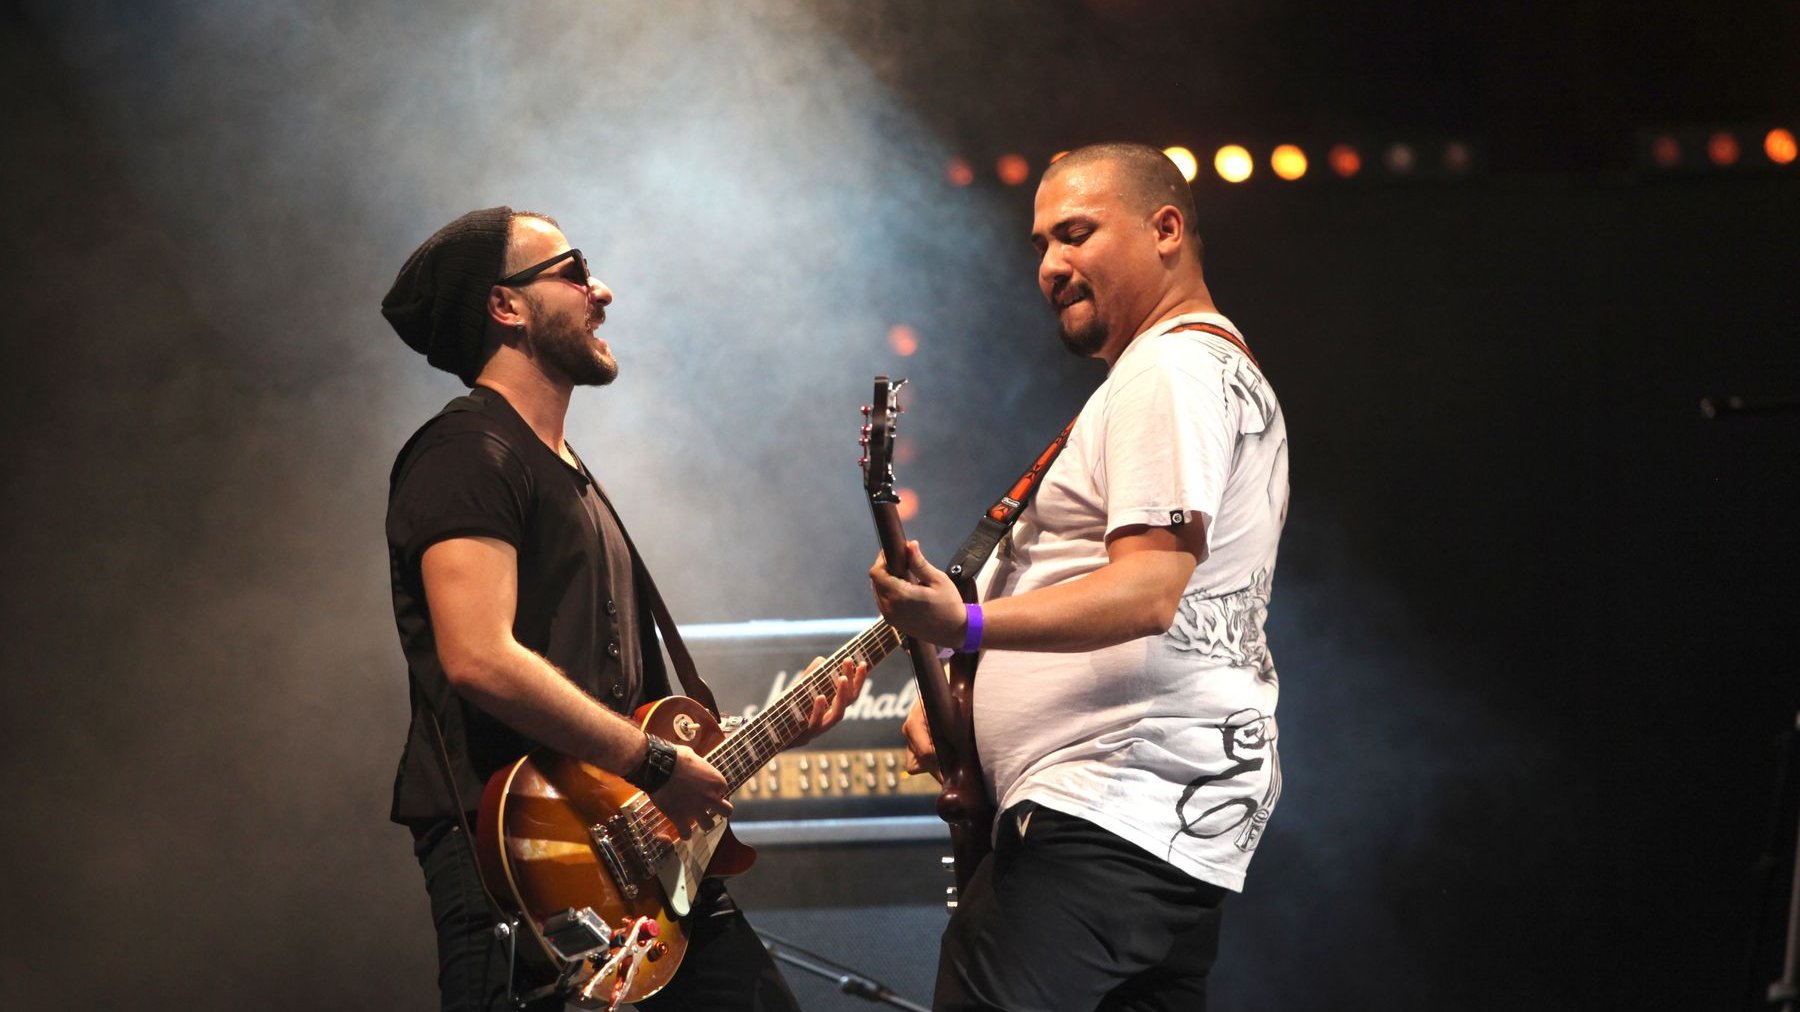 Le groupe, qui s'est formé en 2012, a sorti un premier opus de 5 titres, New life, en août 2014.
